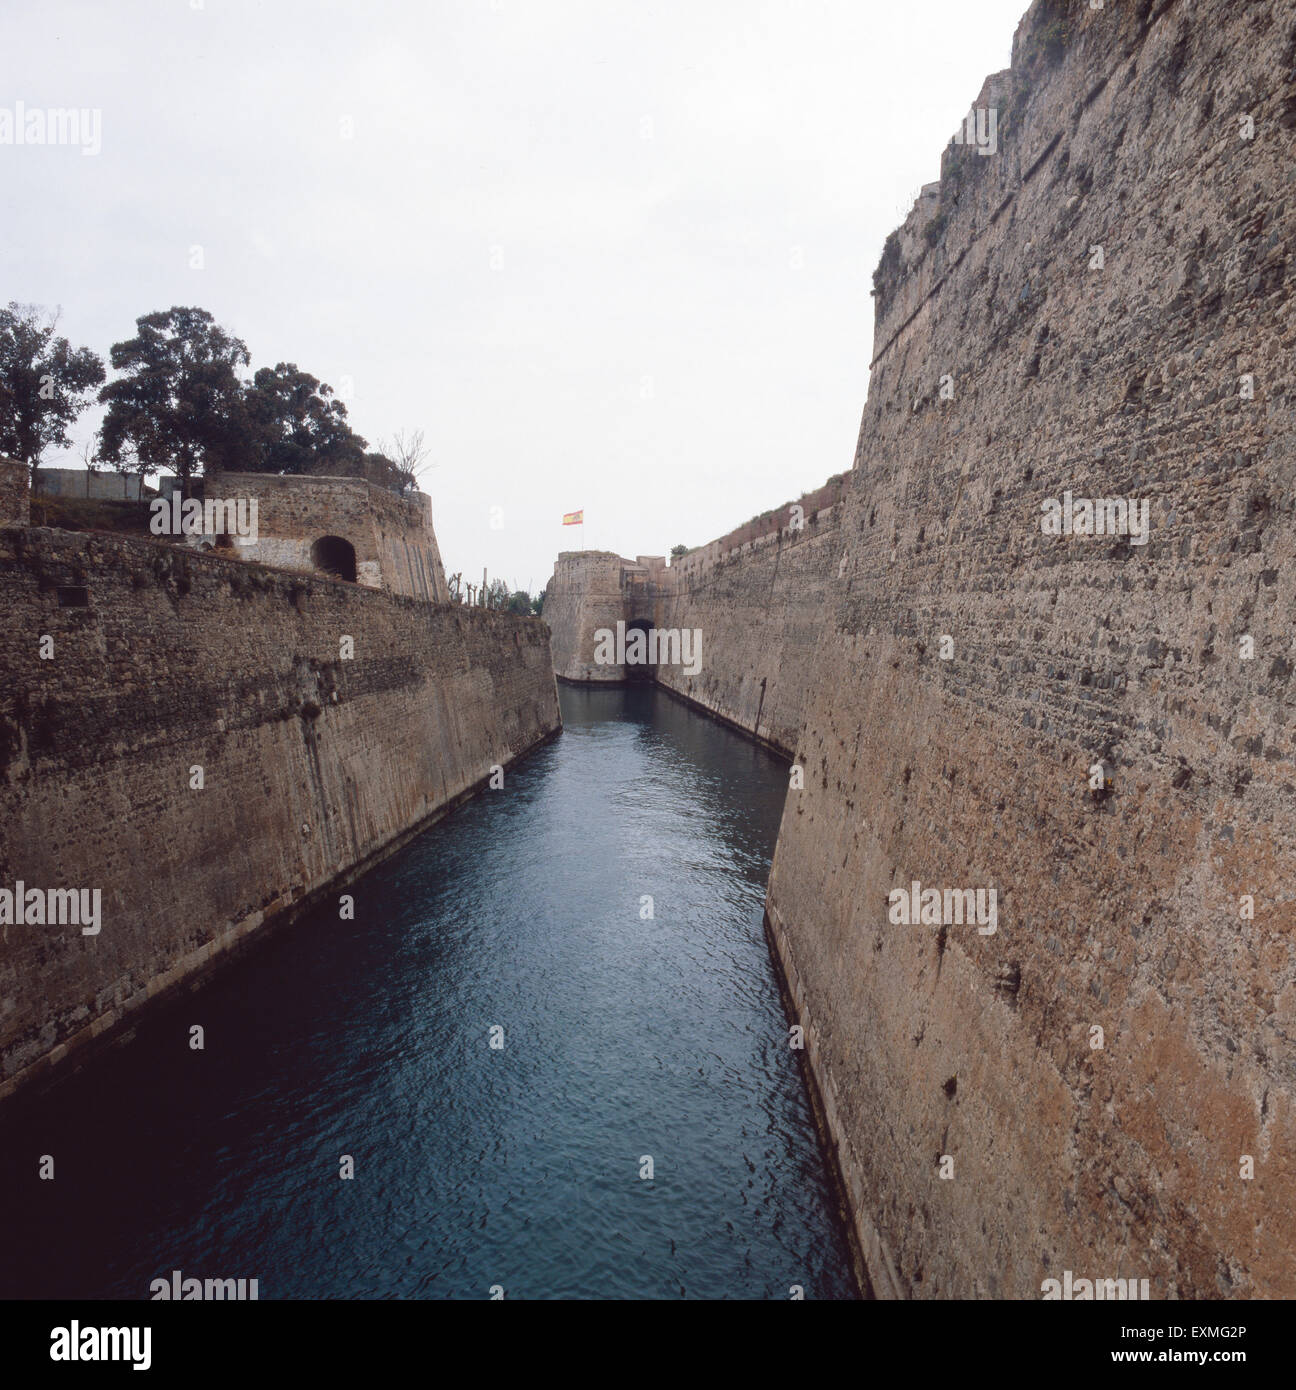 Die Befestigungsanlagen der spanischen Exklave Ceuta, Spanien 1980er Jahre. Fortifications of the spanish exclave Ceuta, Andalusia, Spain 1980s. Stock Photo